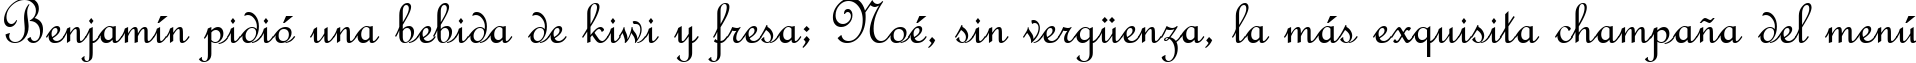 Пример написания шрифтом French Script MT текста на испанском